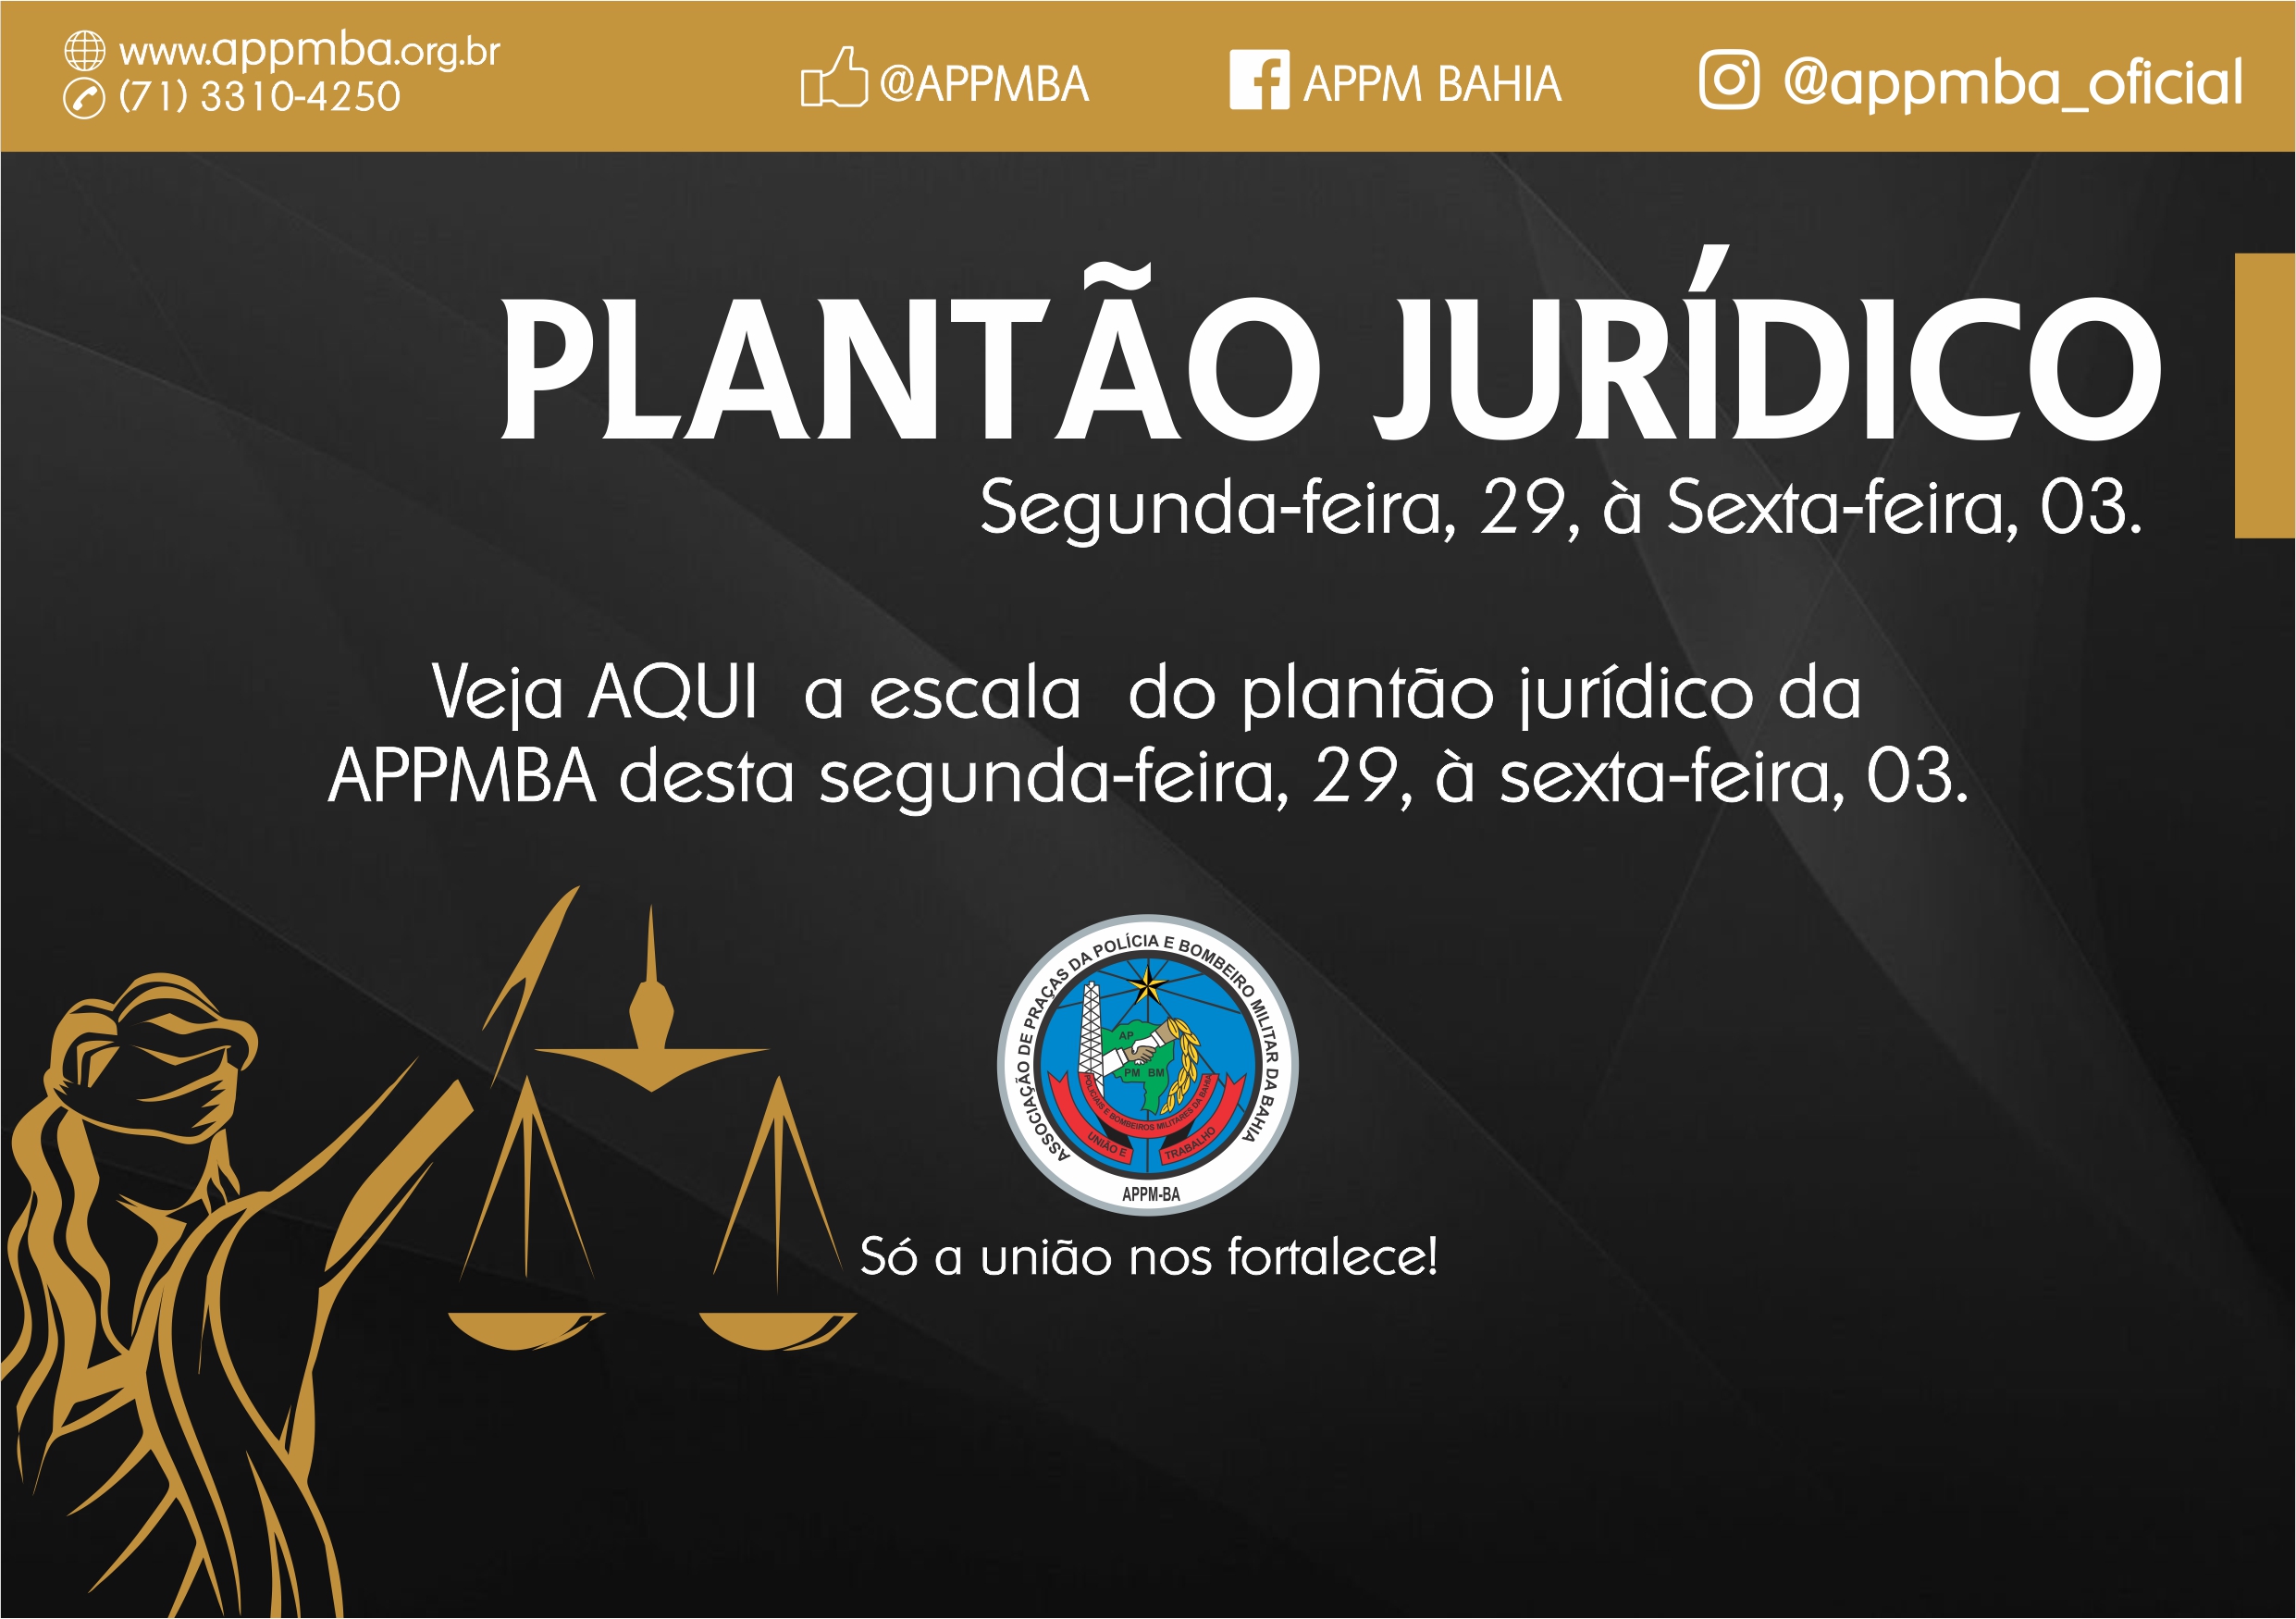 Plantão Jurídico APPM-BA, dias 29/4 à 03/5/2019